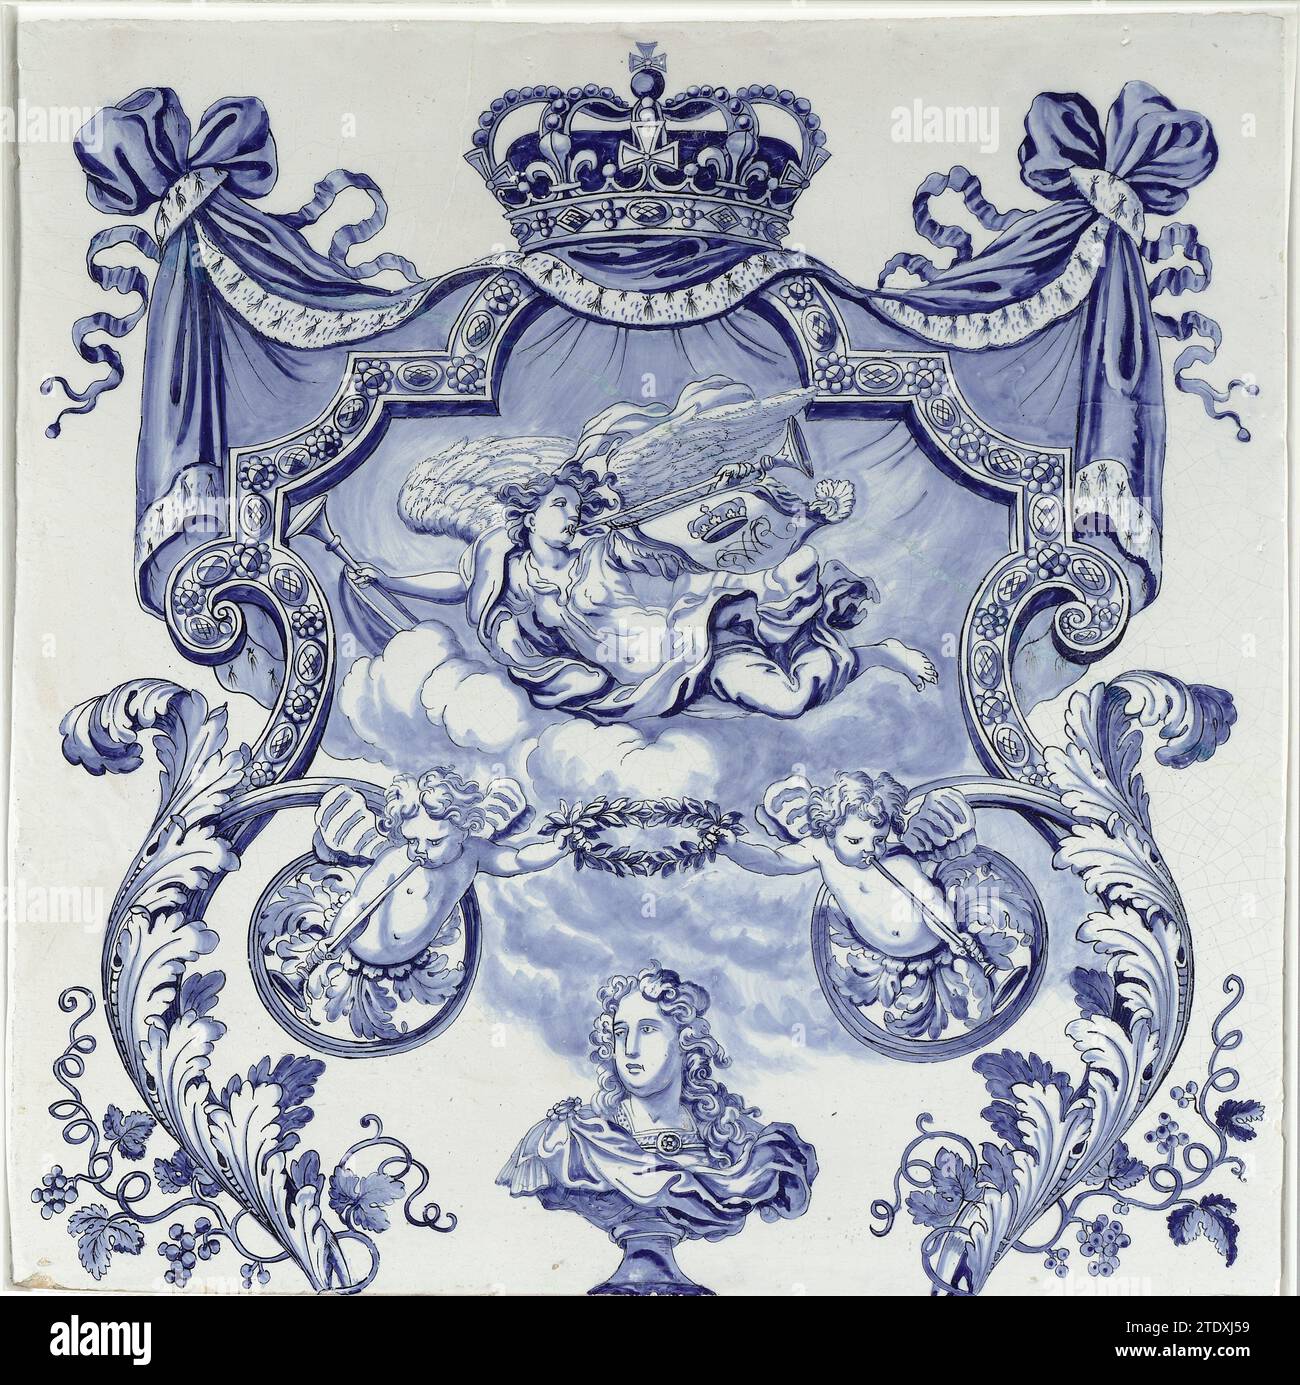 Zwei Tafeln aus einer Säule, de Grieksche A, nach Adrianus Kocx, ca. 1690 Fliesen mit blauer Darstellung mit einer Krone mit Hermelin, die auf dem halbrunden Teil eines symmetrischen Ornamentbandwerkes aufliegt. Unter der Krone schwingt eine trompetengeblasene weibliche Figur auf Wolken. Auf der Trompete befindet sich ein Standard mit dem gekrönten Spiegelmonogramm WR (Willem Rex). In der Mitte des unteren Randes eine Büste am Fuß von Wilhelm III. Mit Kopf nach rechts. Über ihm halten zwei trompetenstrahlende Engel, die aus Blattfellen kommen, einen Lorbeerkranz. Delfter Steingut. Zinnglasur Majolika Fliese mit blauem Represe Stockfoto